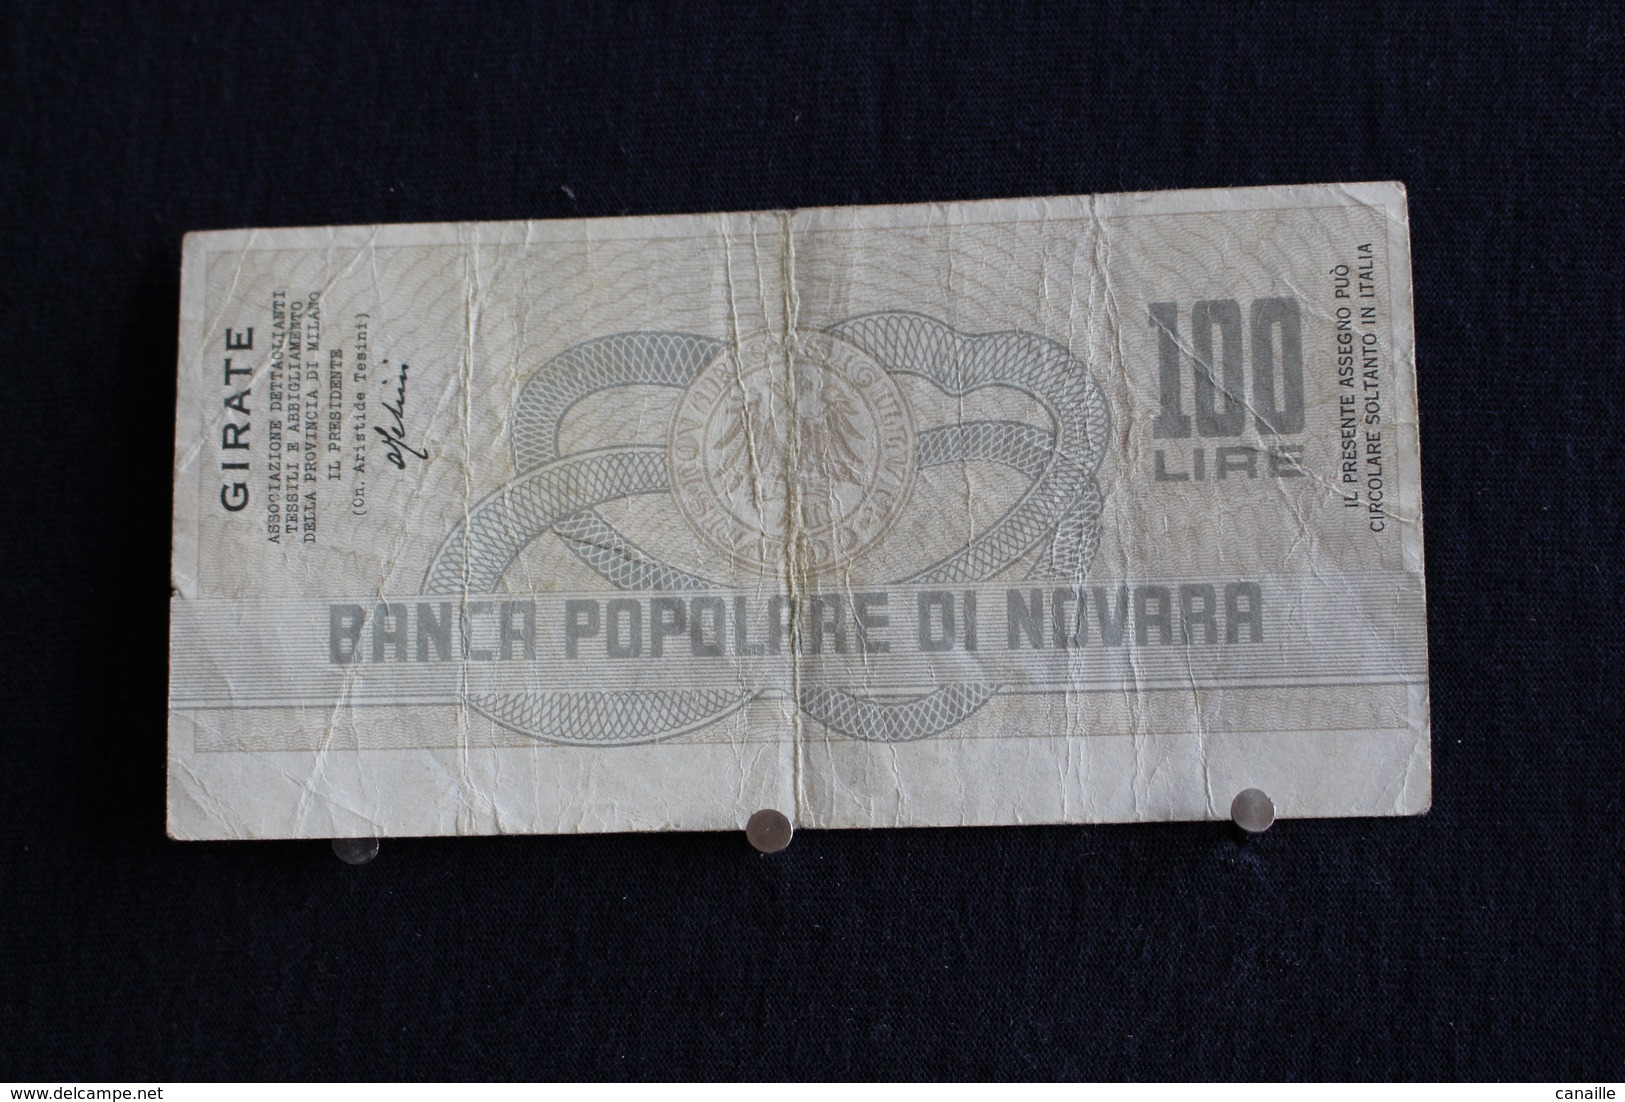 6 / Italie / 1946: Royaume / Biglietti Di Stato - La Banca Popolare Di Novara, 18/7/77 - Vale 100 Lire - - 100 Lire